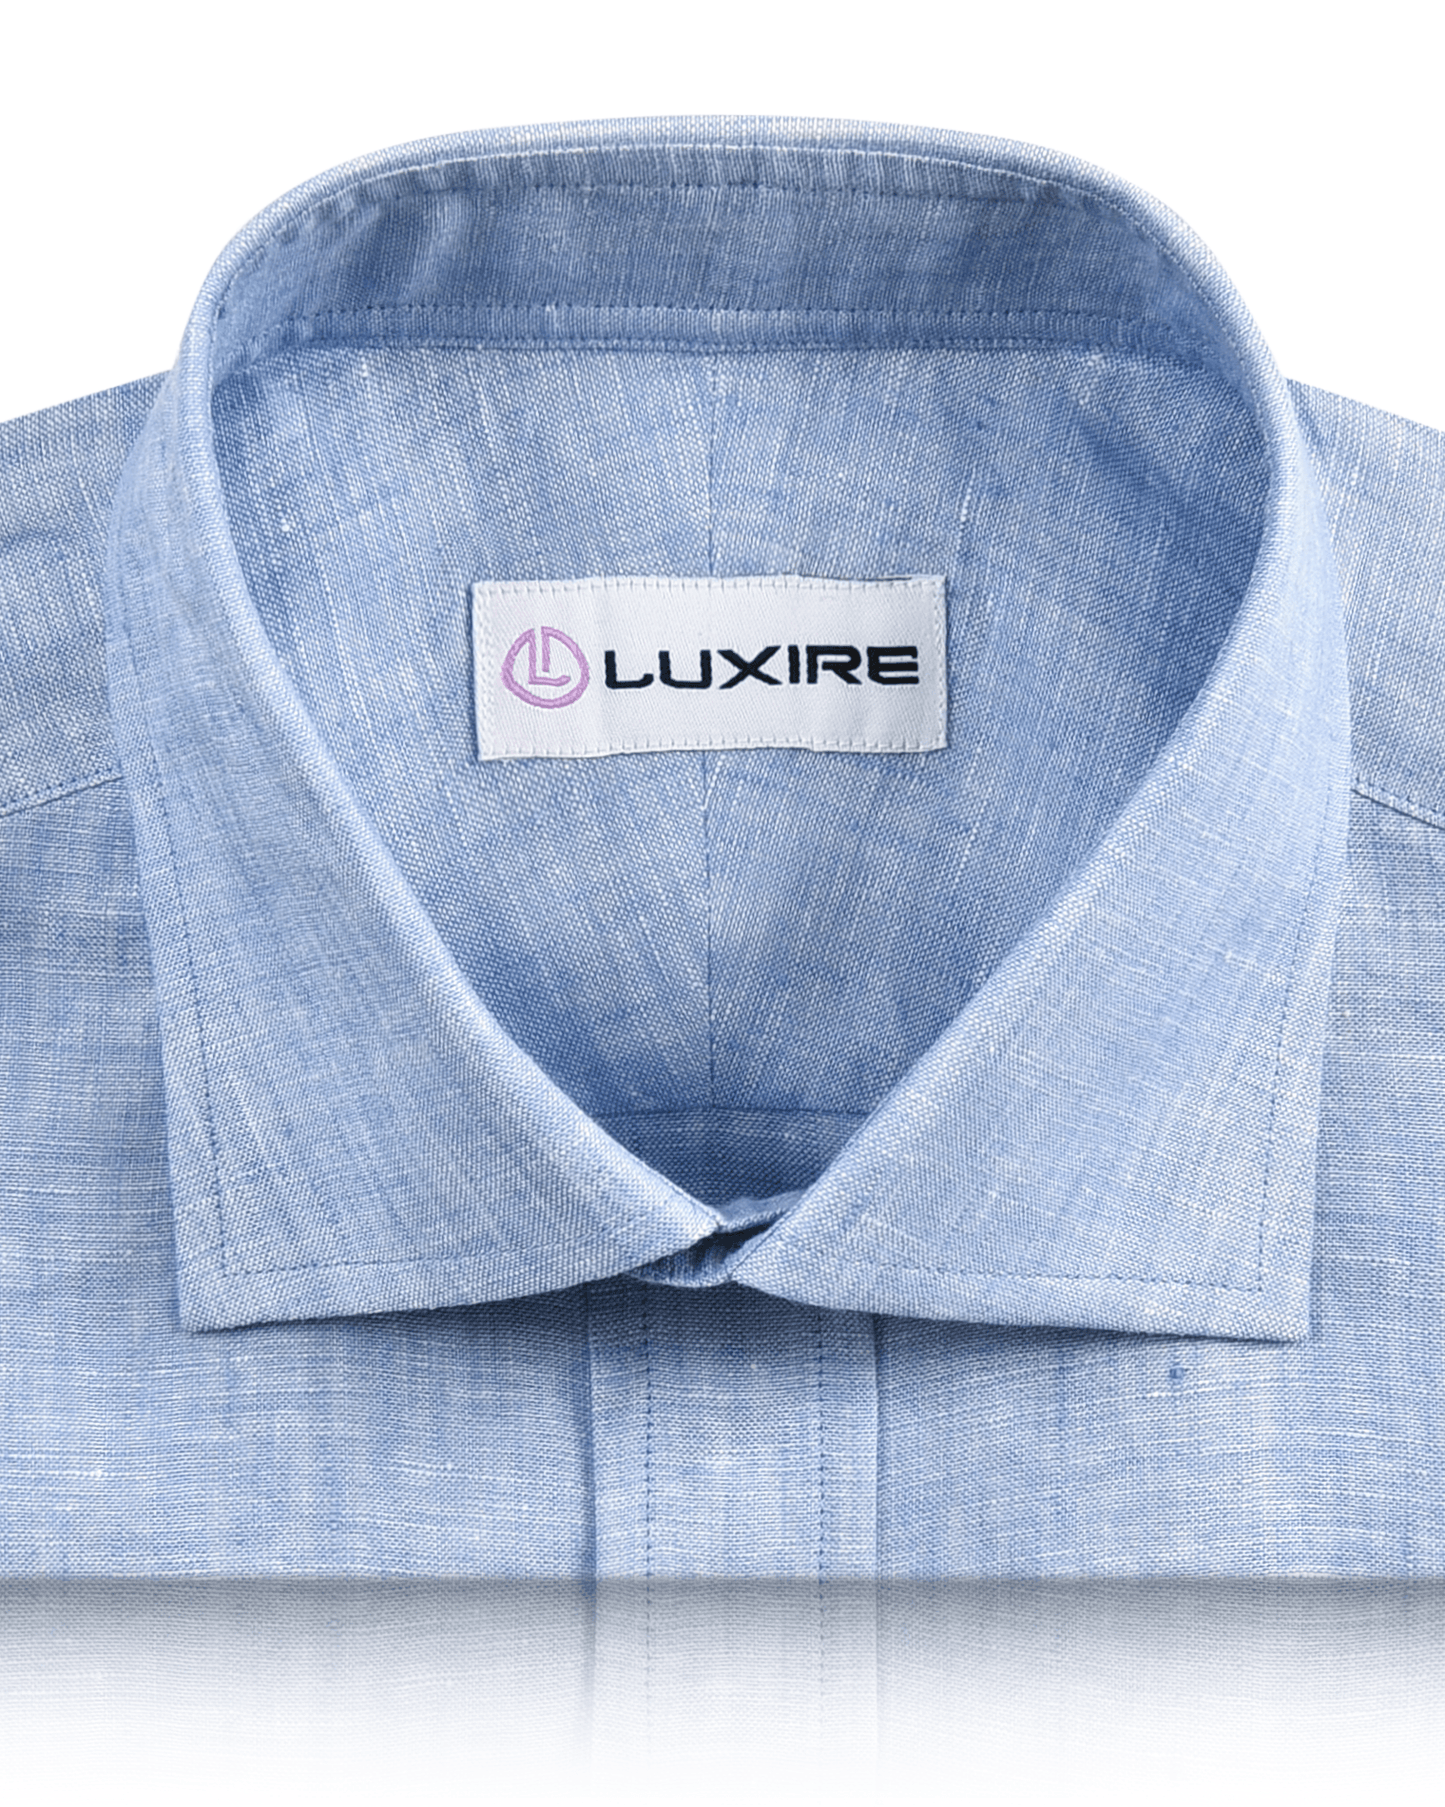 Linen Cotton: Light Blue Chambray Shirt